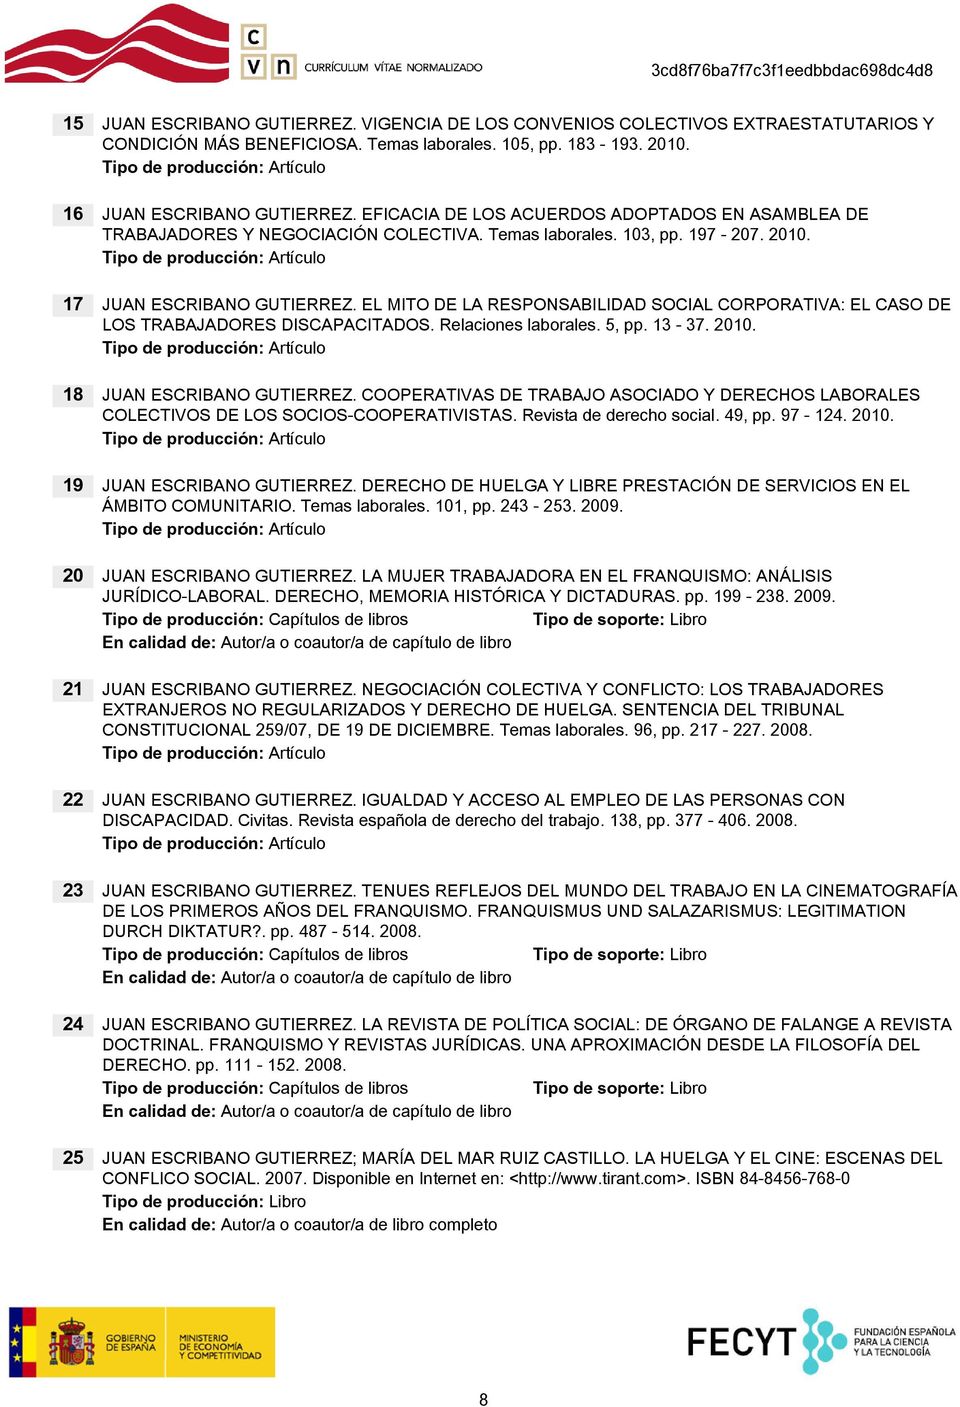 17 EL MITO DE LA RESPONSABILIDAD SOCIAL CORPORATIVA: EL CASO DE LOS TRABAJADORES DISCAPACITADOS. Relaciones laborales. 5, pp. 13-37. 2010.